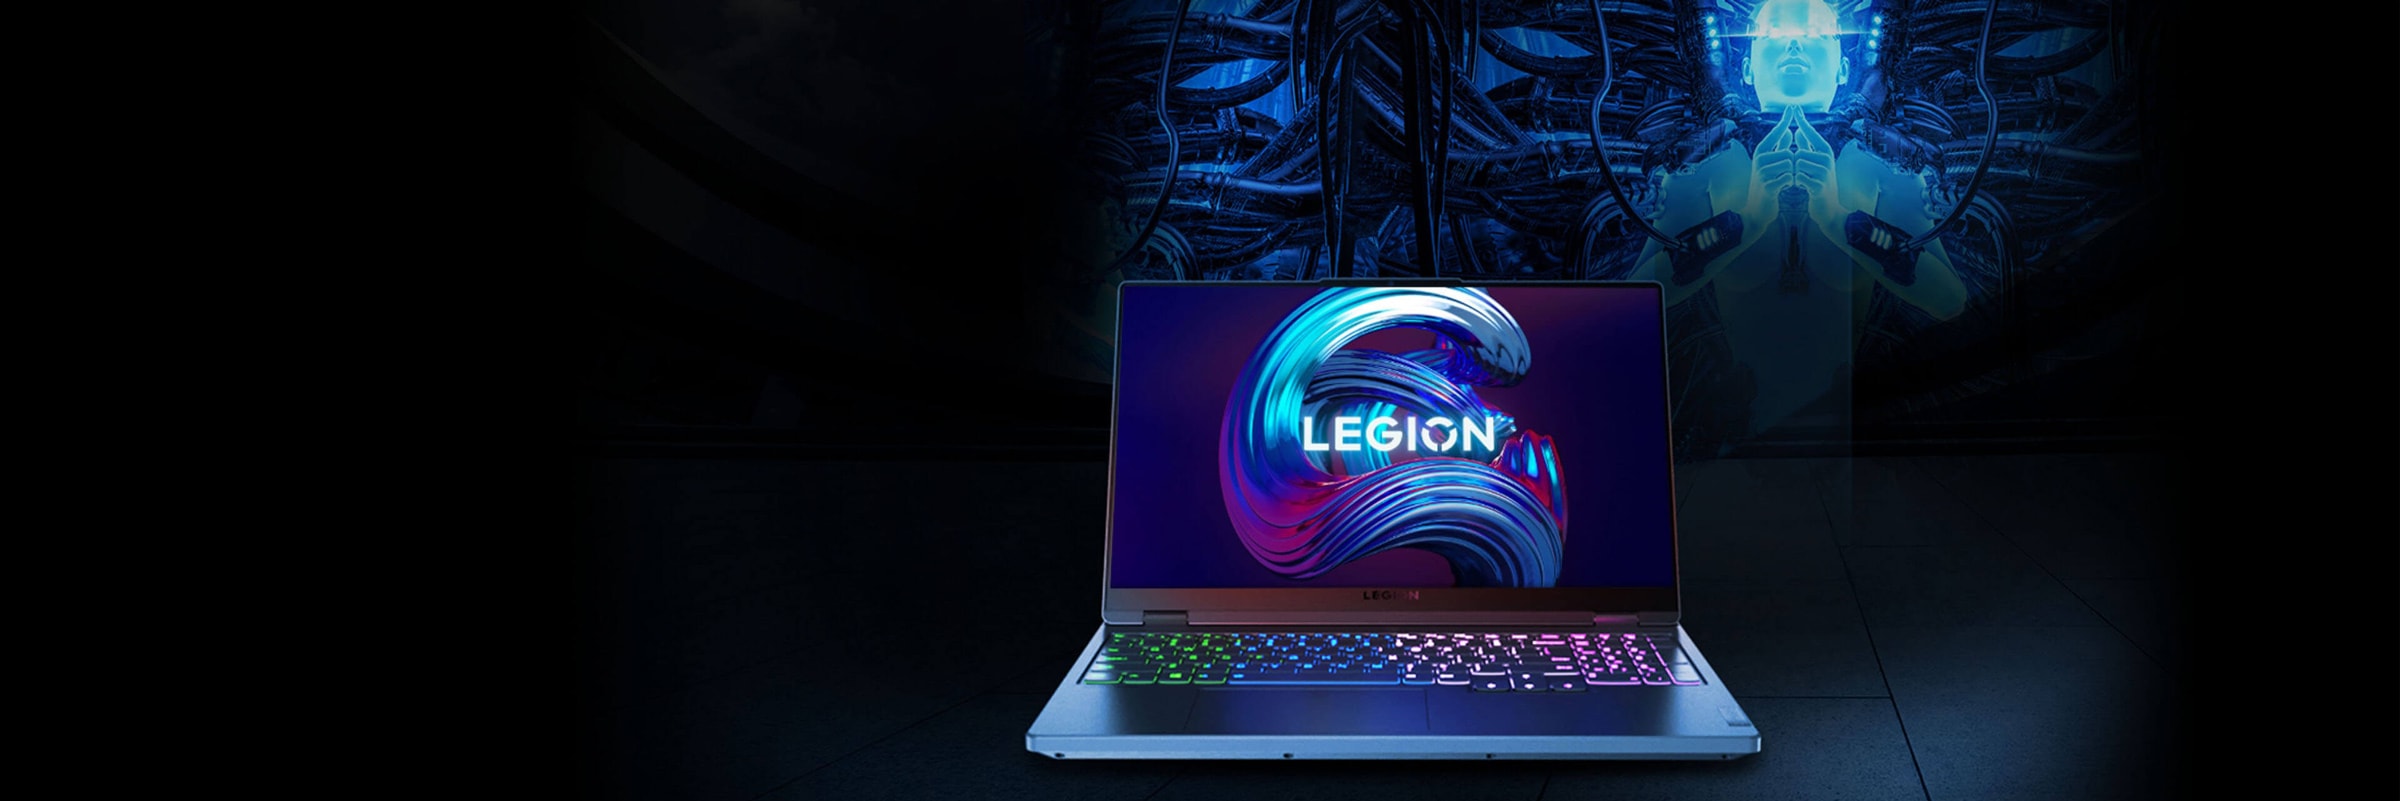 90 derece açık Legion dizüstü bilgisayara önden bakış, ekran ve klavye görünüyor.